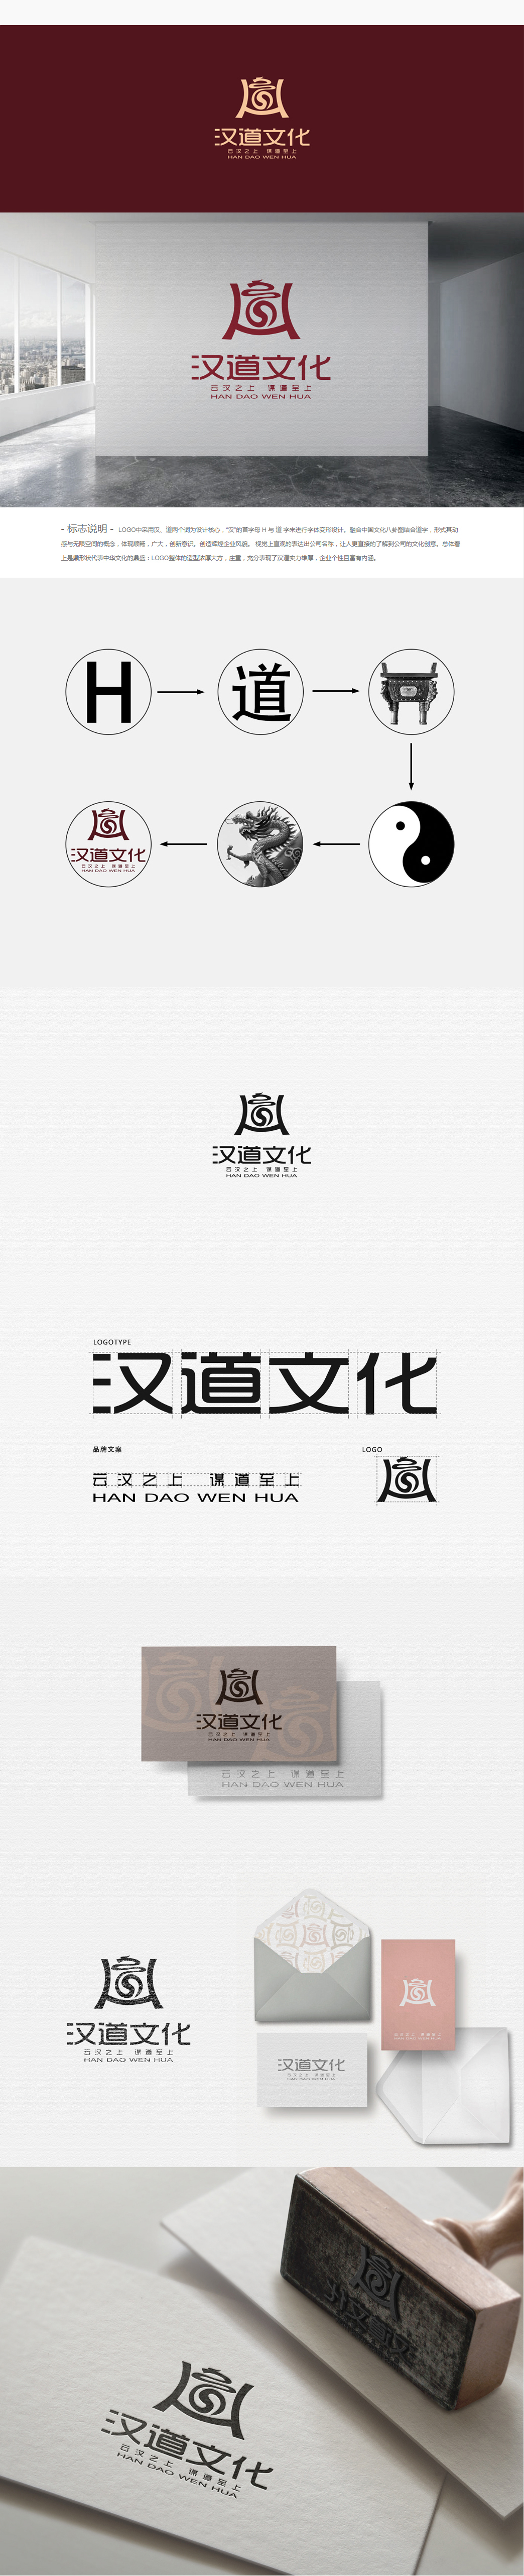 漢道文化品牌LOGO設計圖0